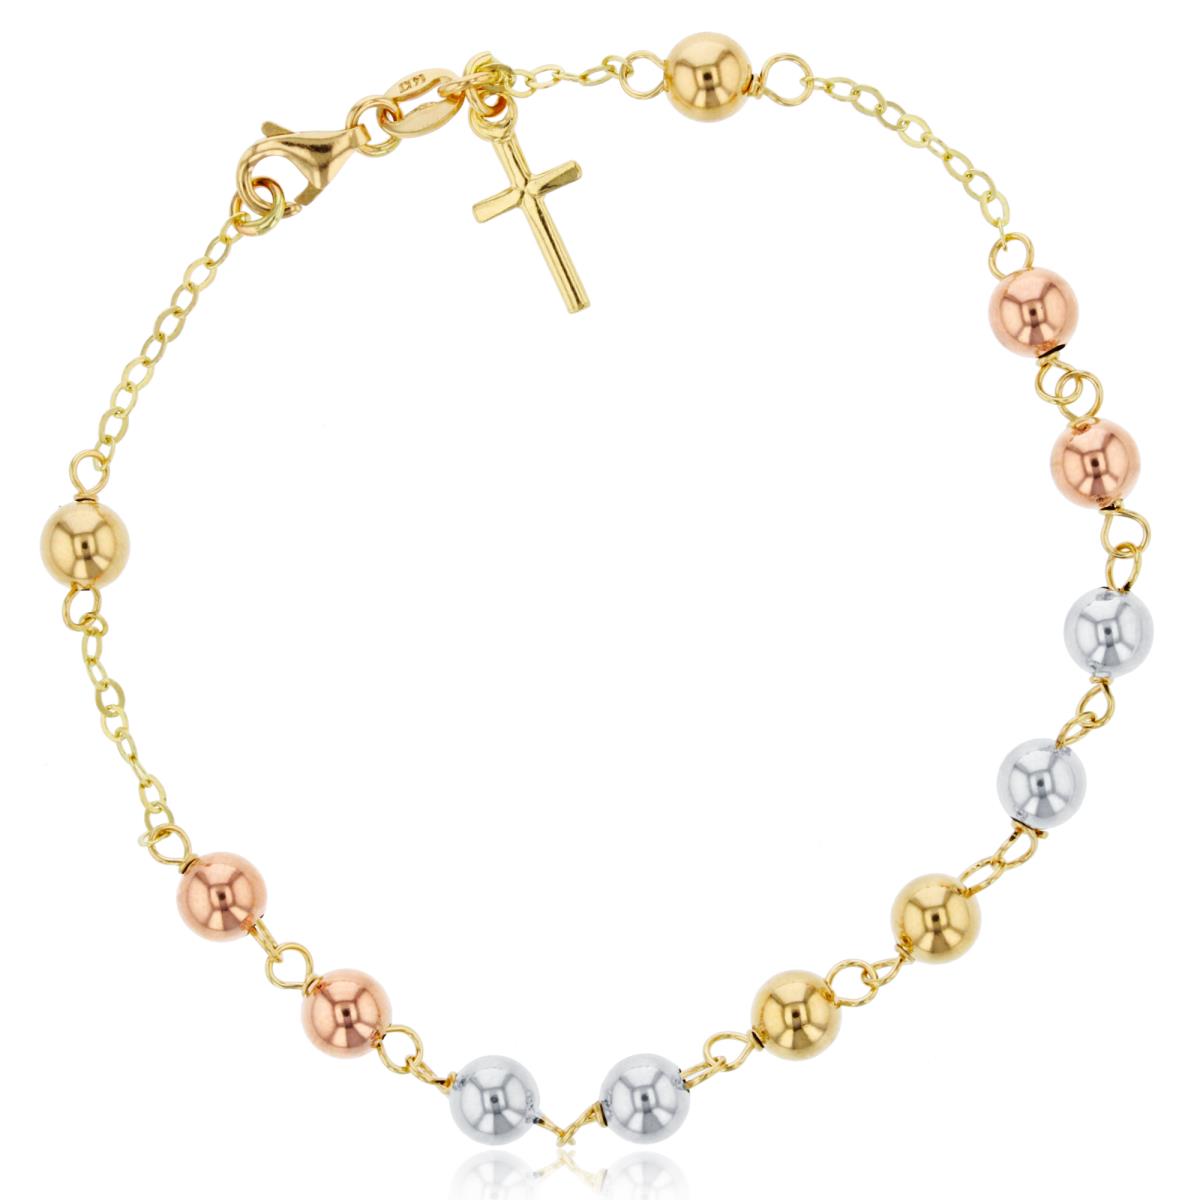 14K Tri-Color Gold 5mm Polished Beads Dangling Cross 7.25" Bracelet